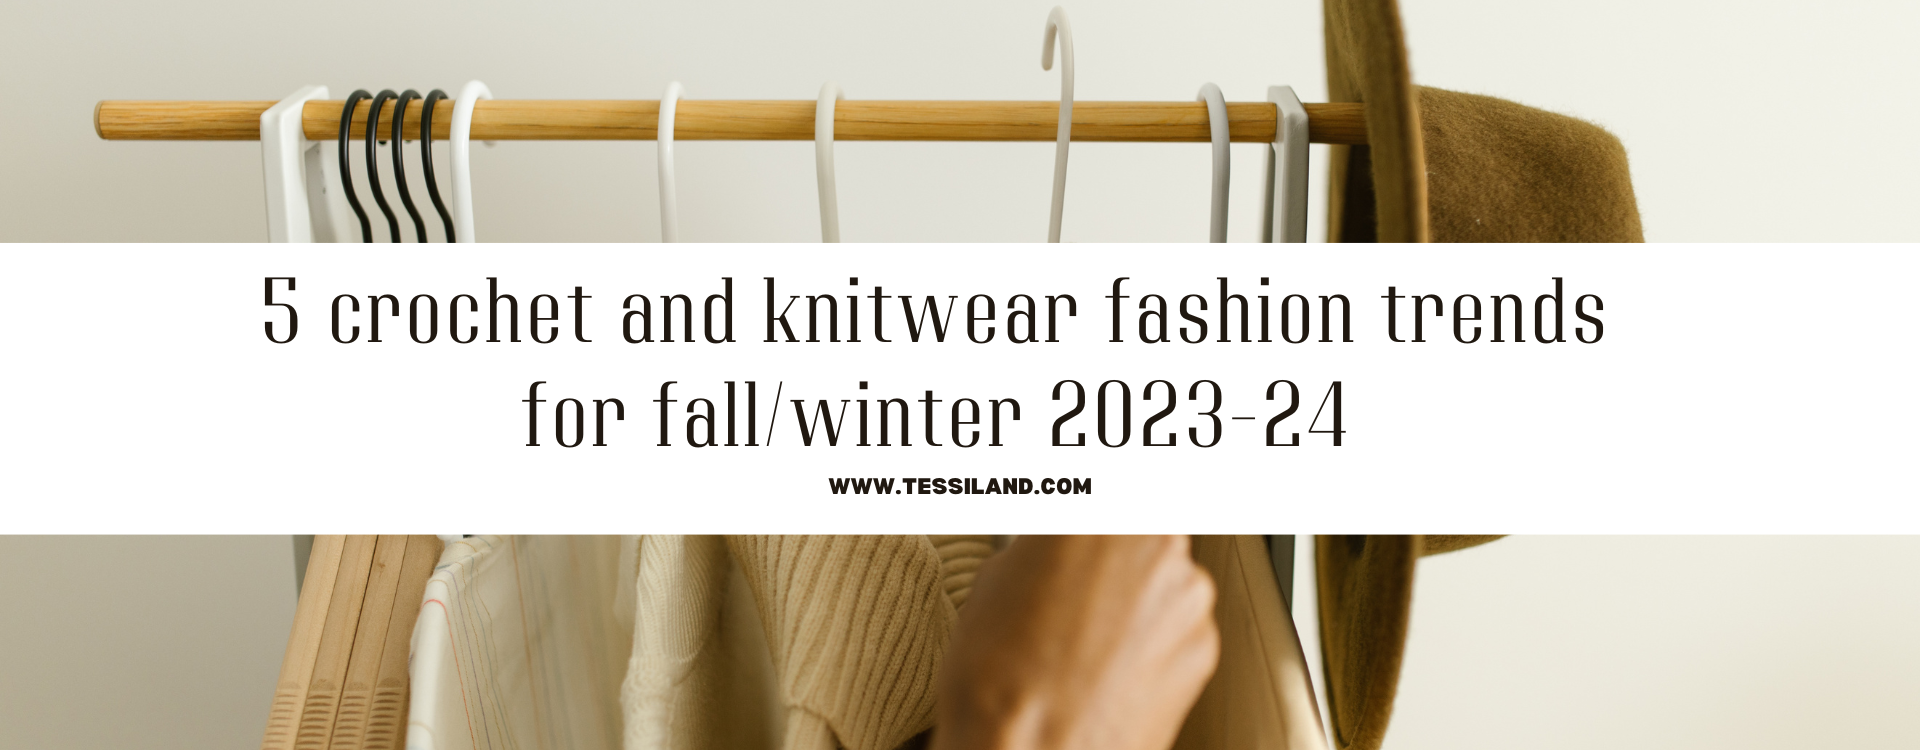 5 tendenze moda crochet e a maglia f/w 2023-24